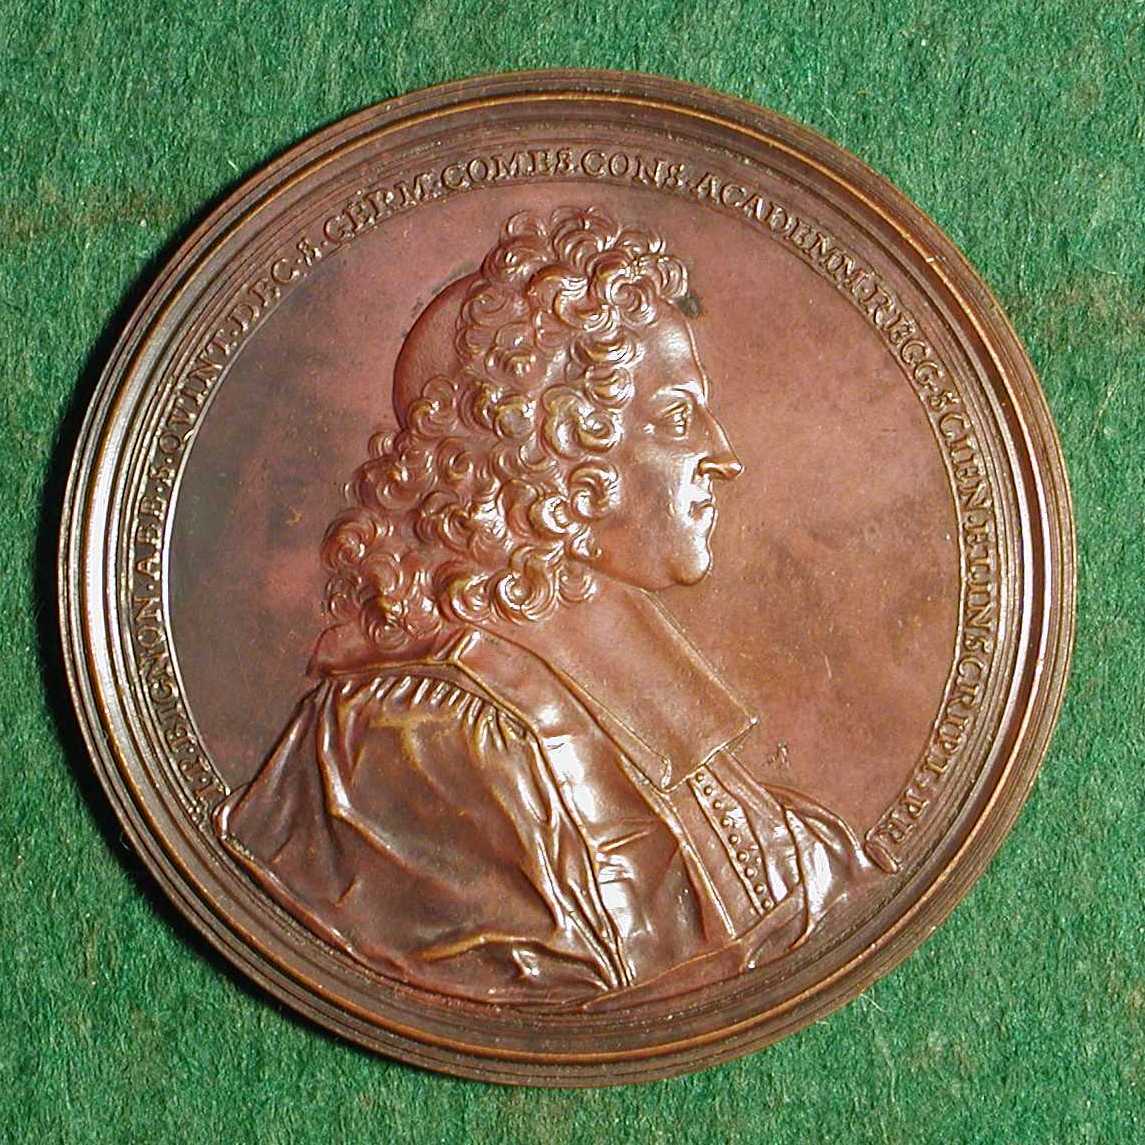 File:Bignon, Jean-Paul (1662-1743) medal.jpg